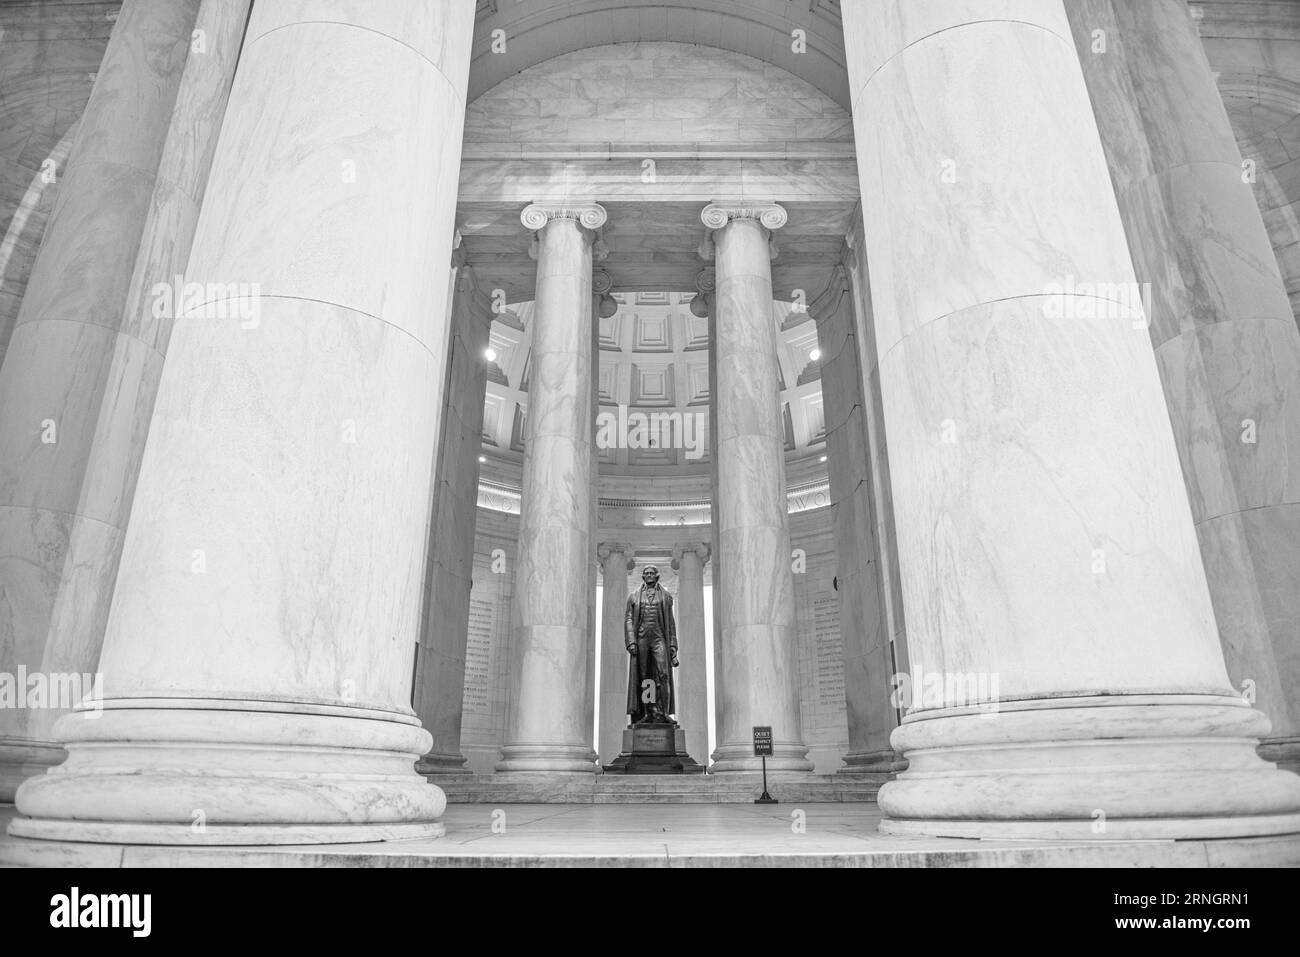 WASHINGTON DC, Stati Uniti - il Jefferson Memorial si erge come un monumento iconico lungo il Tidal Basin, dedicato al terzo presidente degli Stati Uniti, Thomas Jefferson. Simboleggia il rispetto e l'ammirazione della nazione per il principale autore della dichiarazione di indipendenza e la sua visione della democrazia. Foto Stock